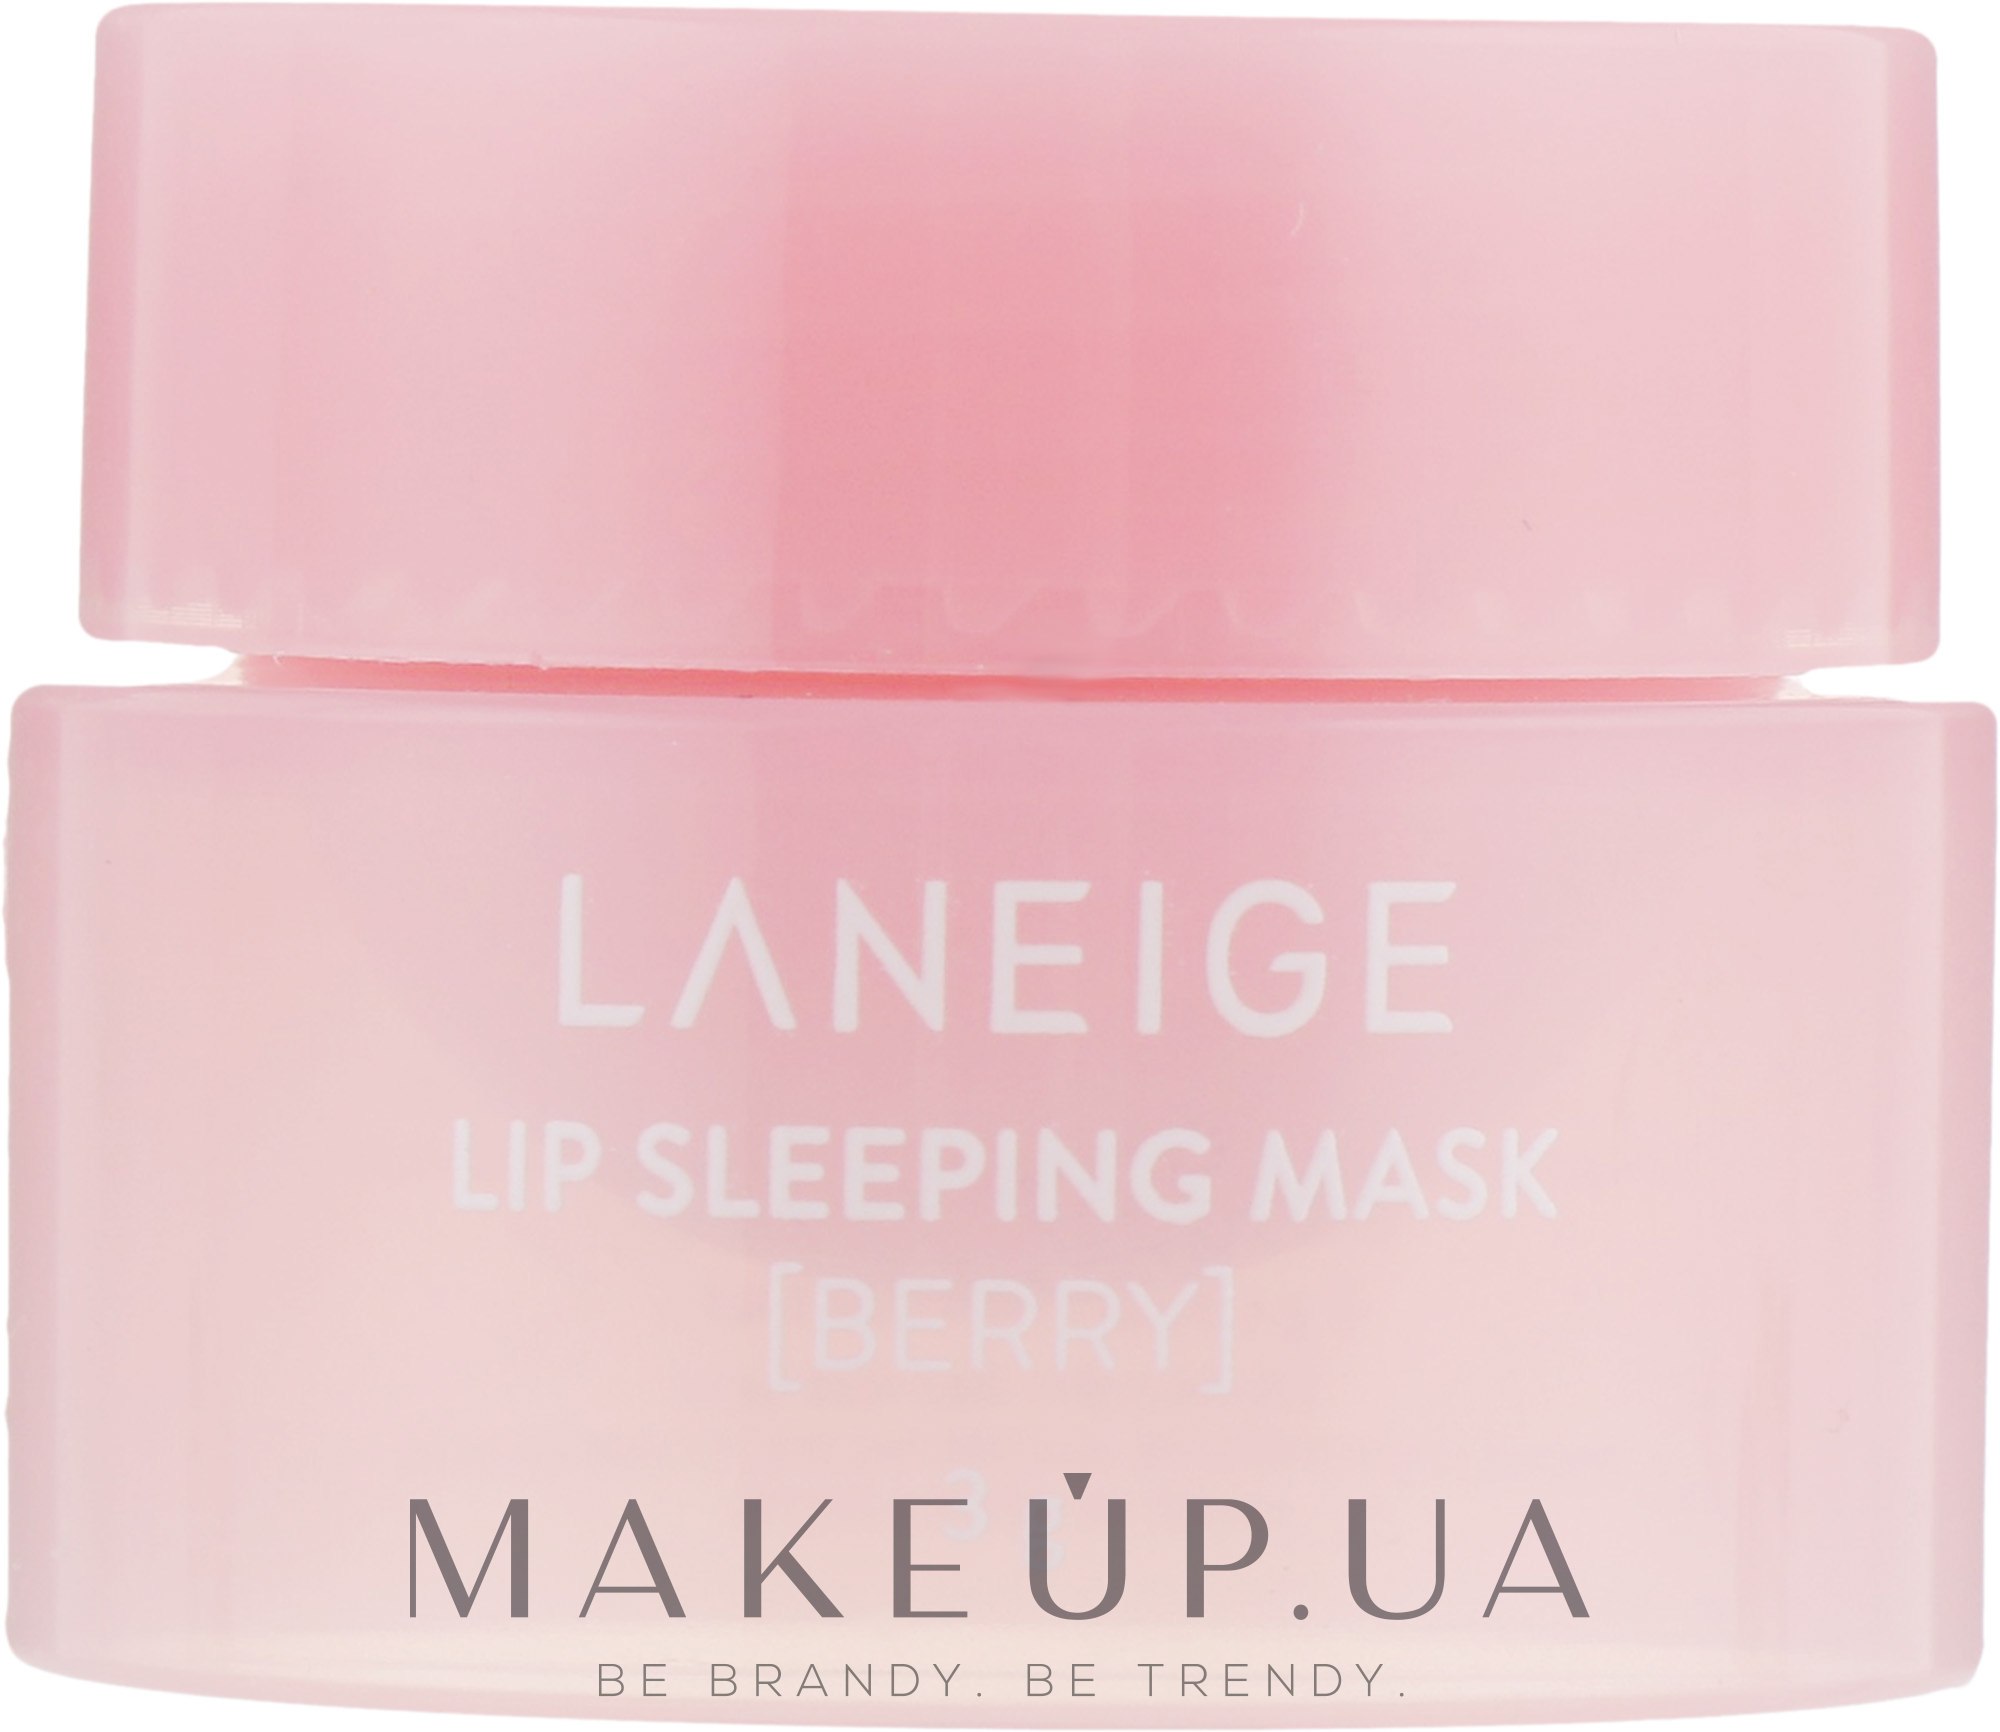 Ночная маска для губ "Лесные ягоды" - Laneige Good Night Sleeping Care Berry (мини) — фото 3g